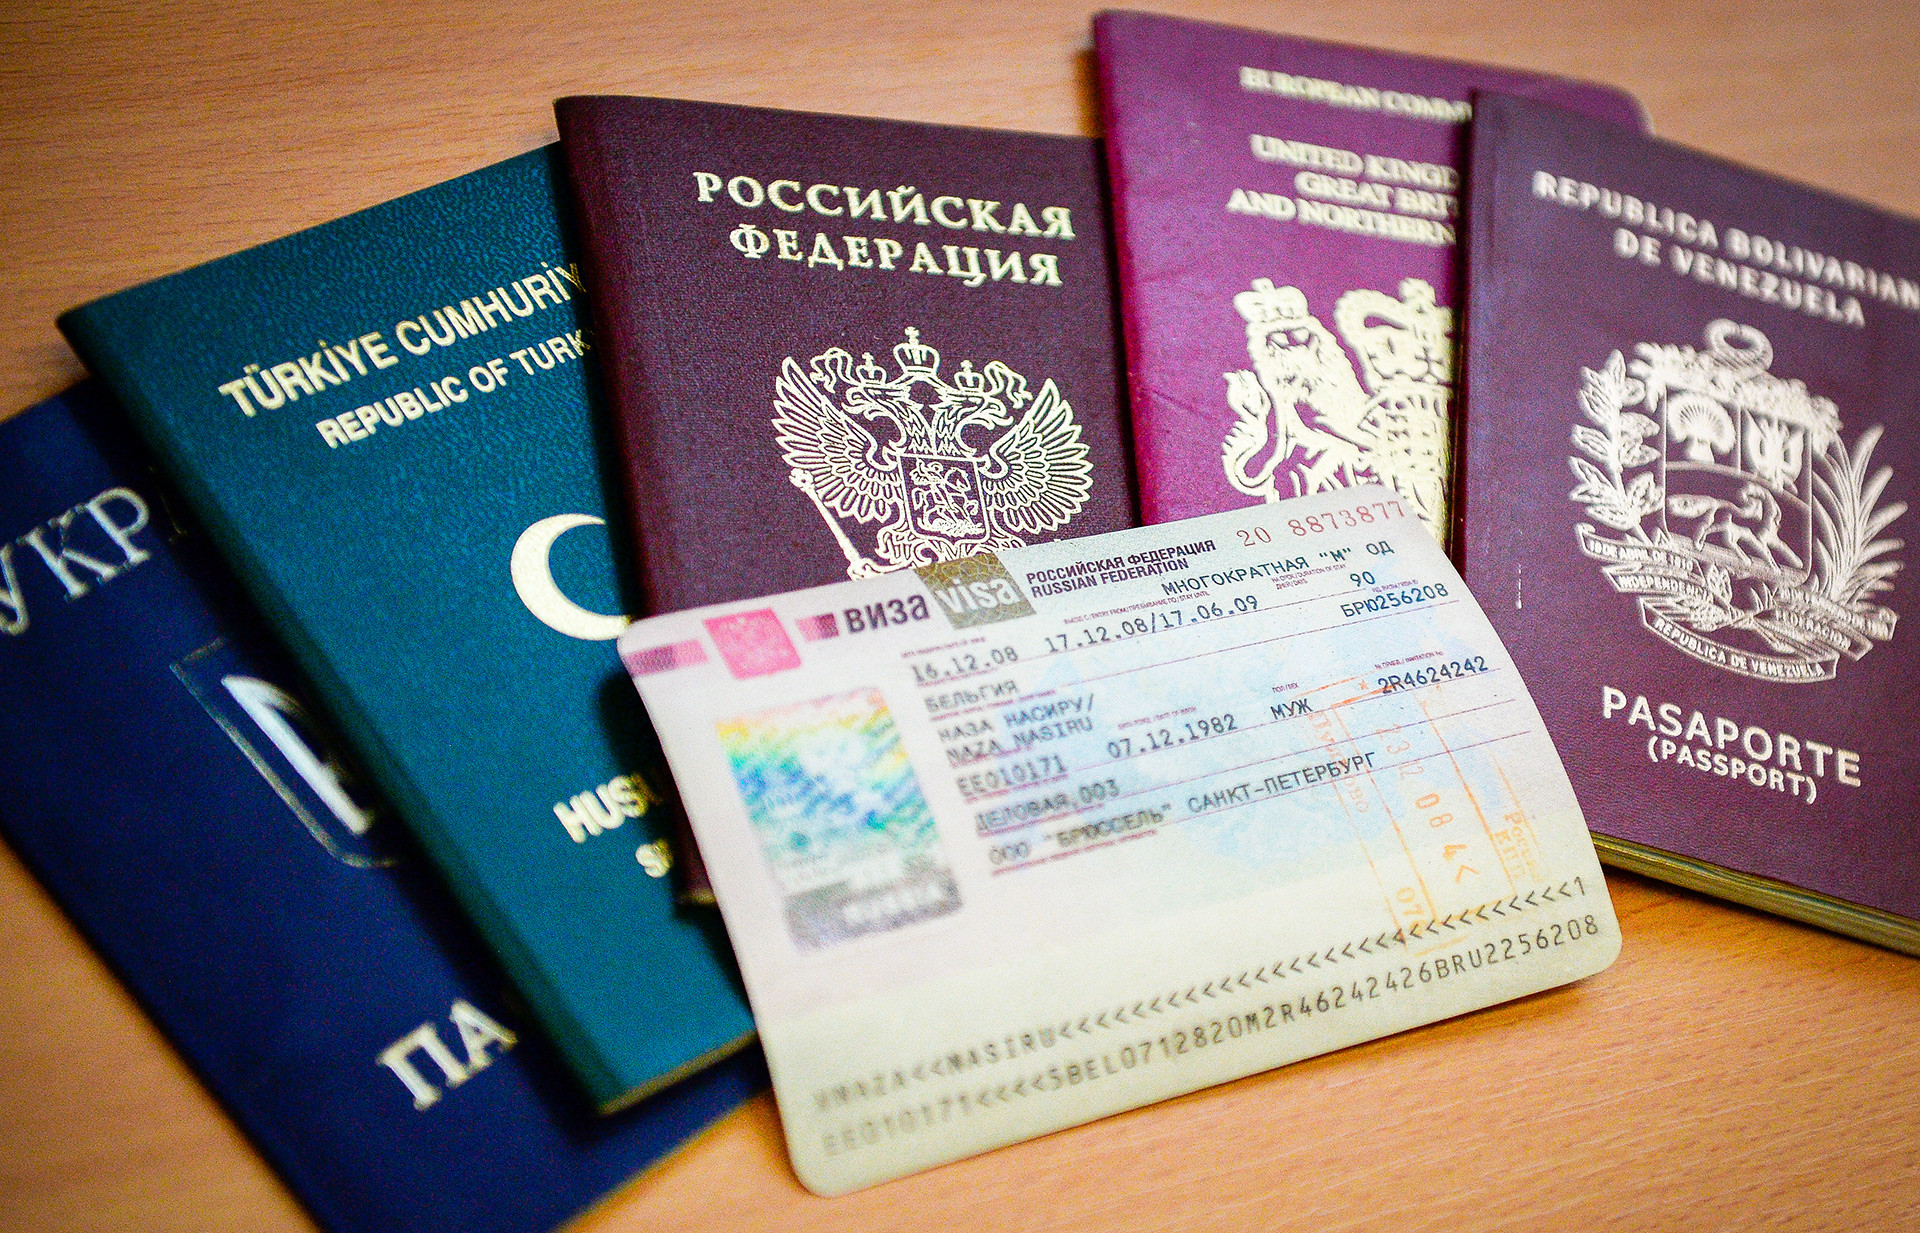 Выездные визы для граждан РФ вводиться пока не будут